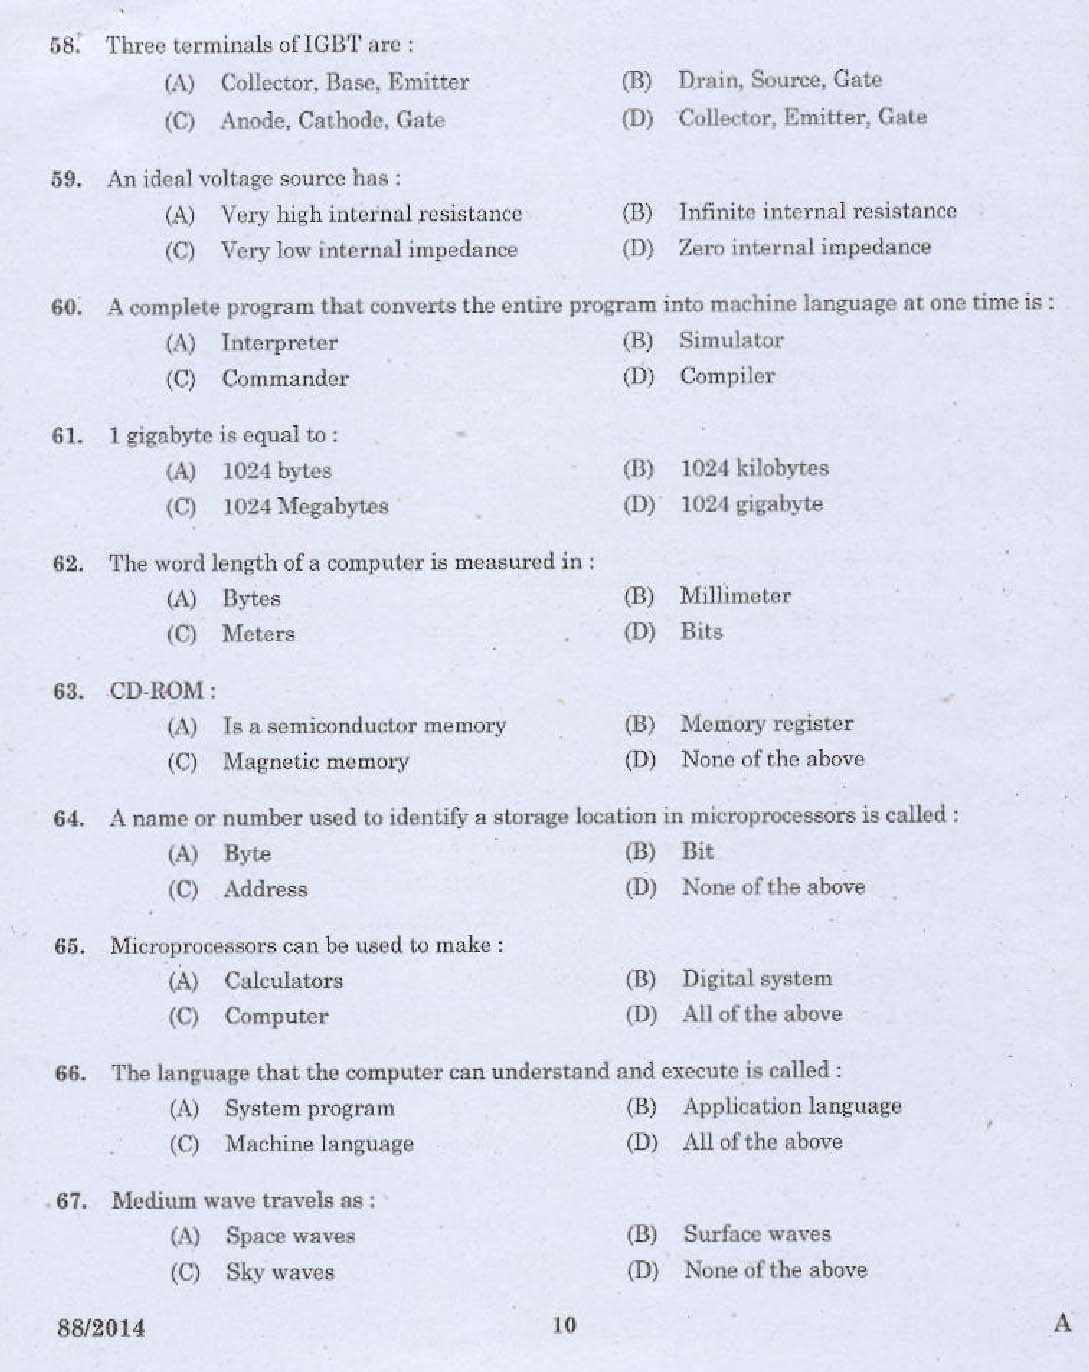 Kerala PSC Junior Instructor Exam Question Paper Code 882014 8